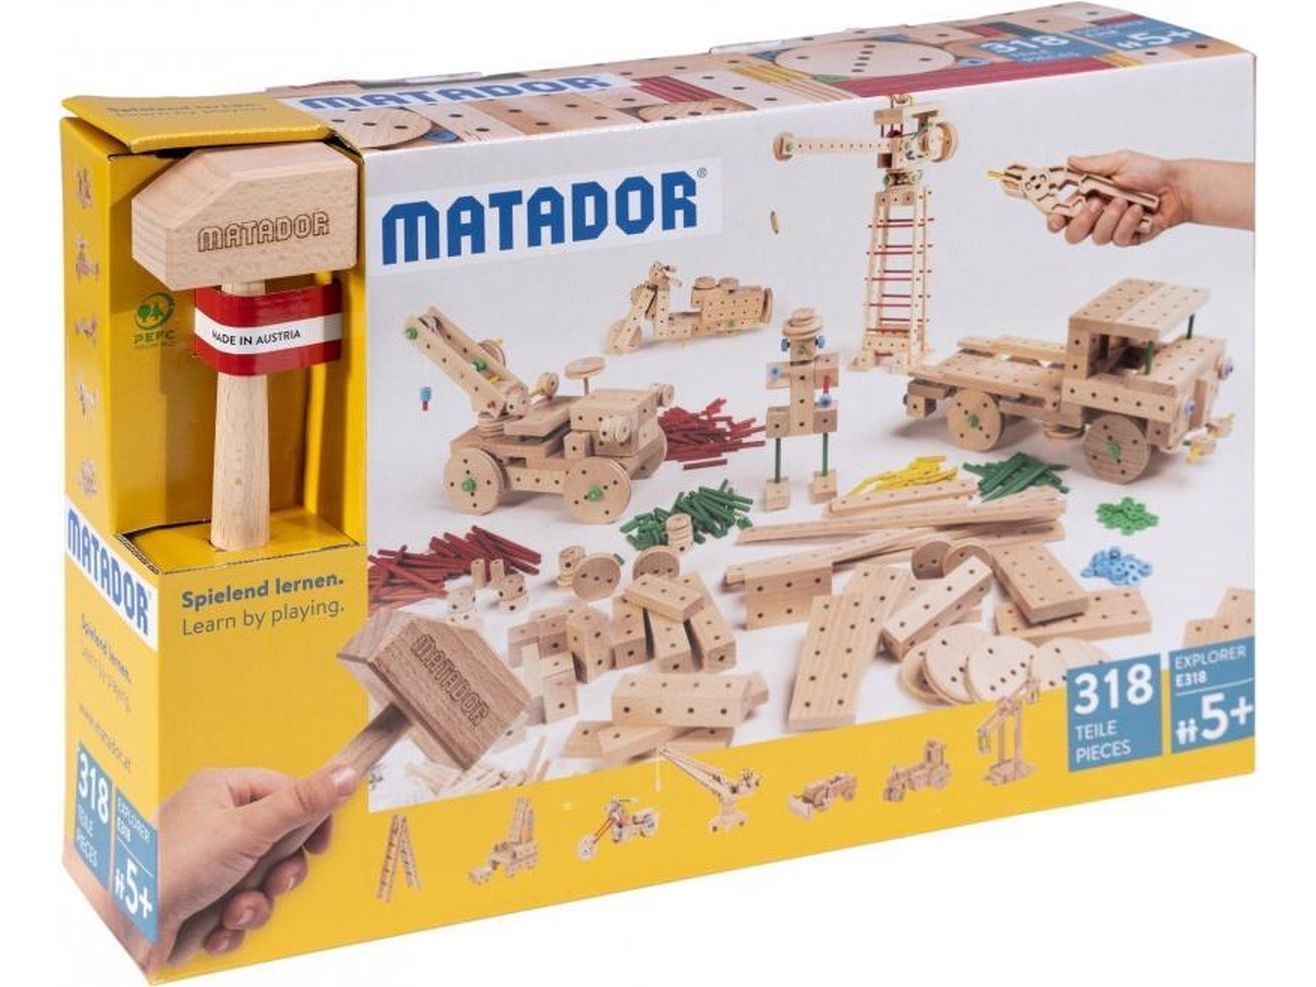 matador-explorer-e318-318-teile-ab-5-j